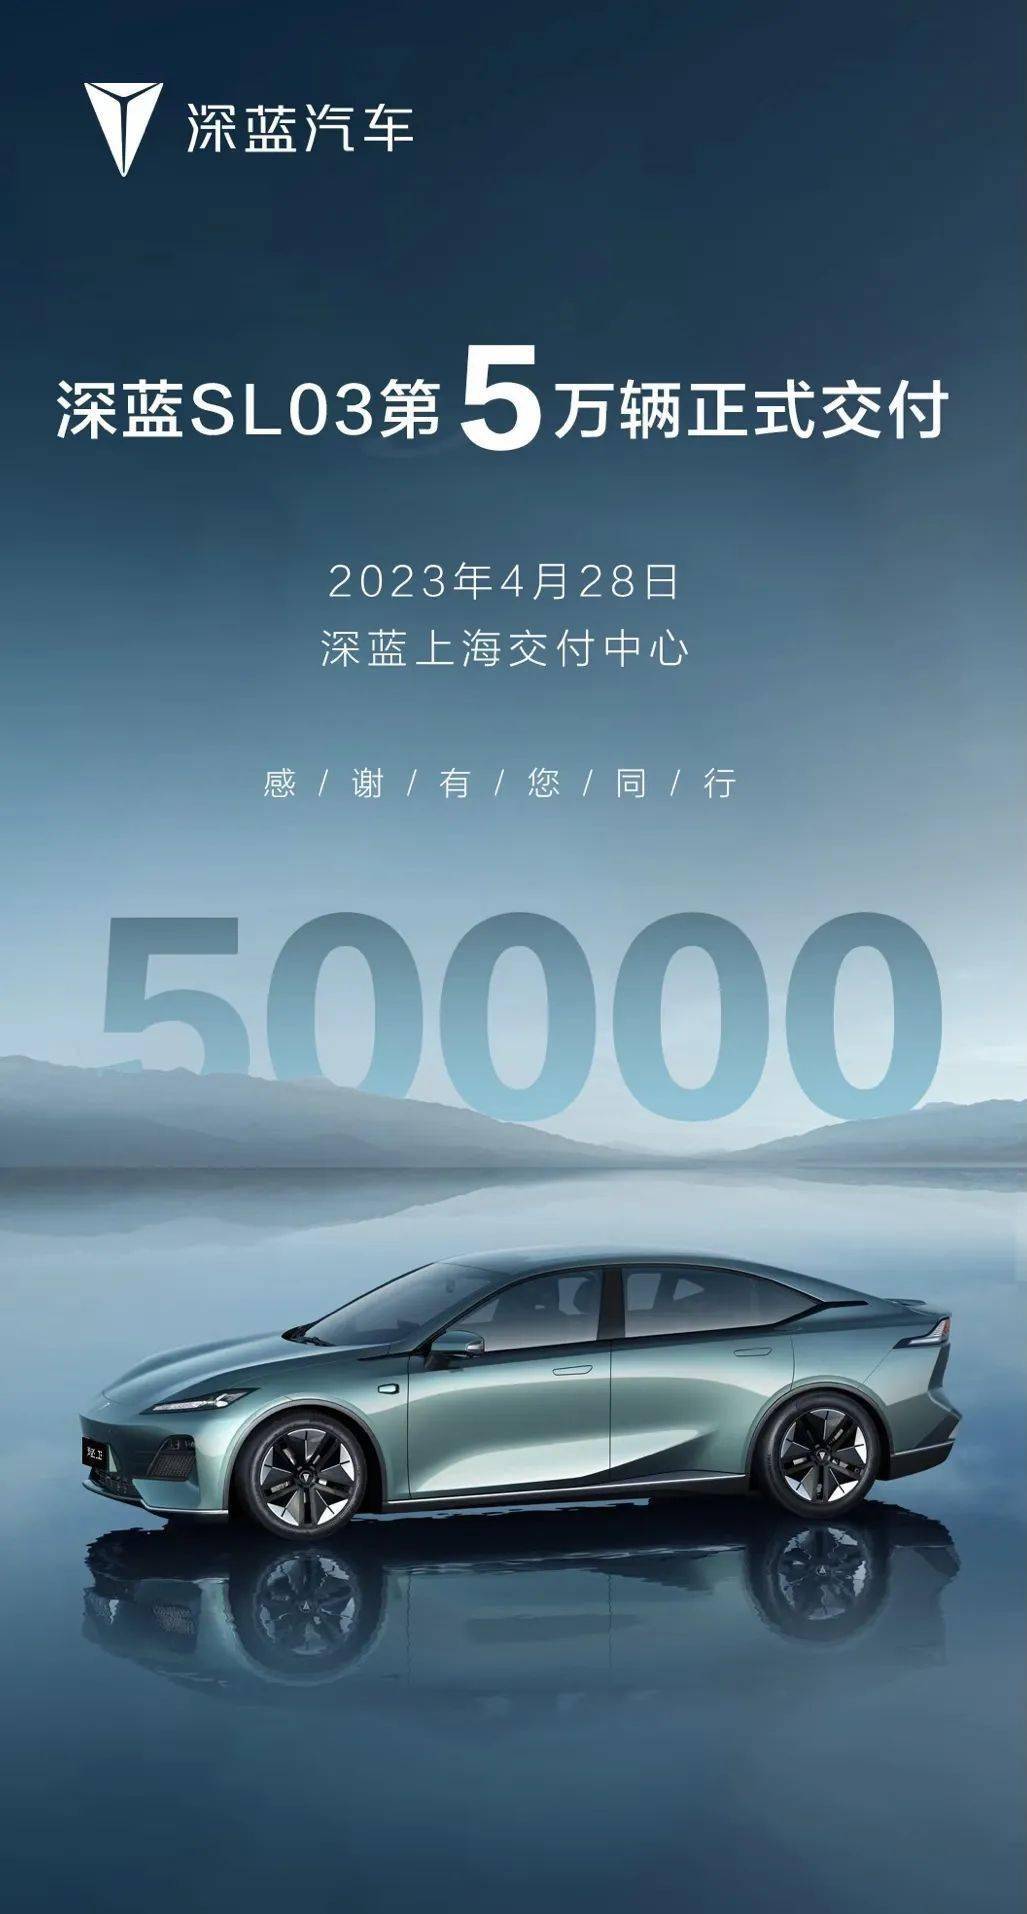 现金快换苹果版:深蓝 SL03 第 5 万辆汽车正式交付，累积安全行驶 2.33 亿公里